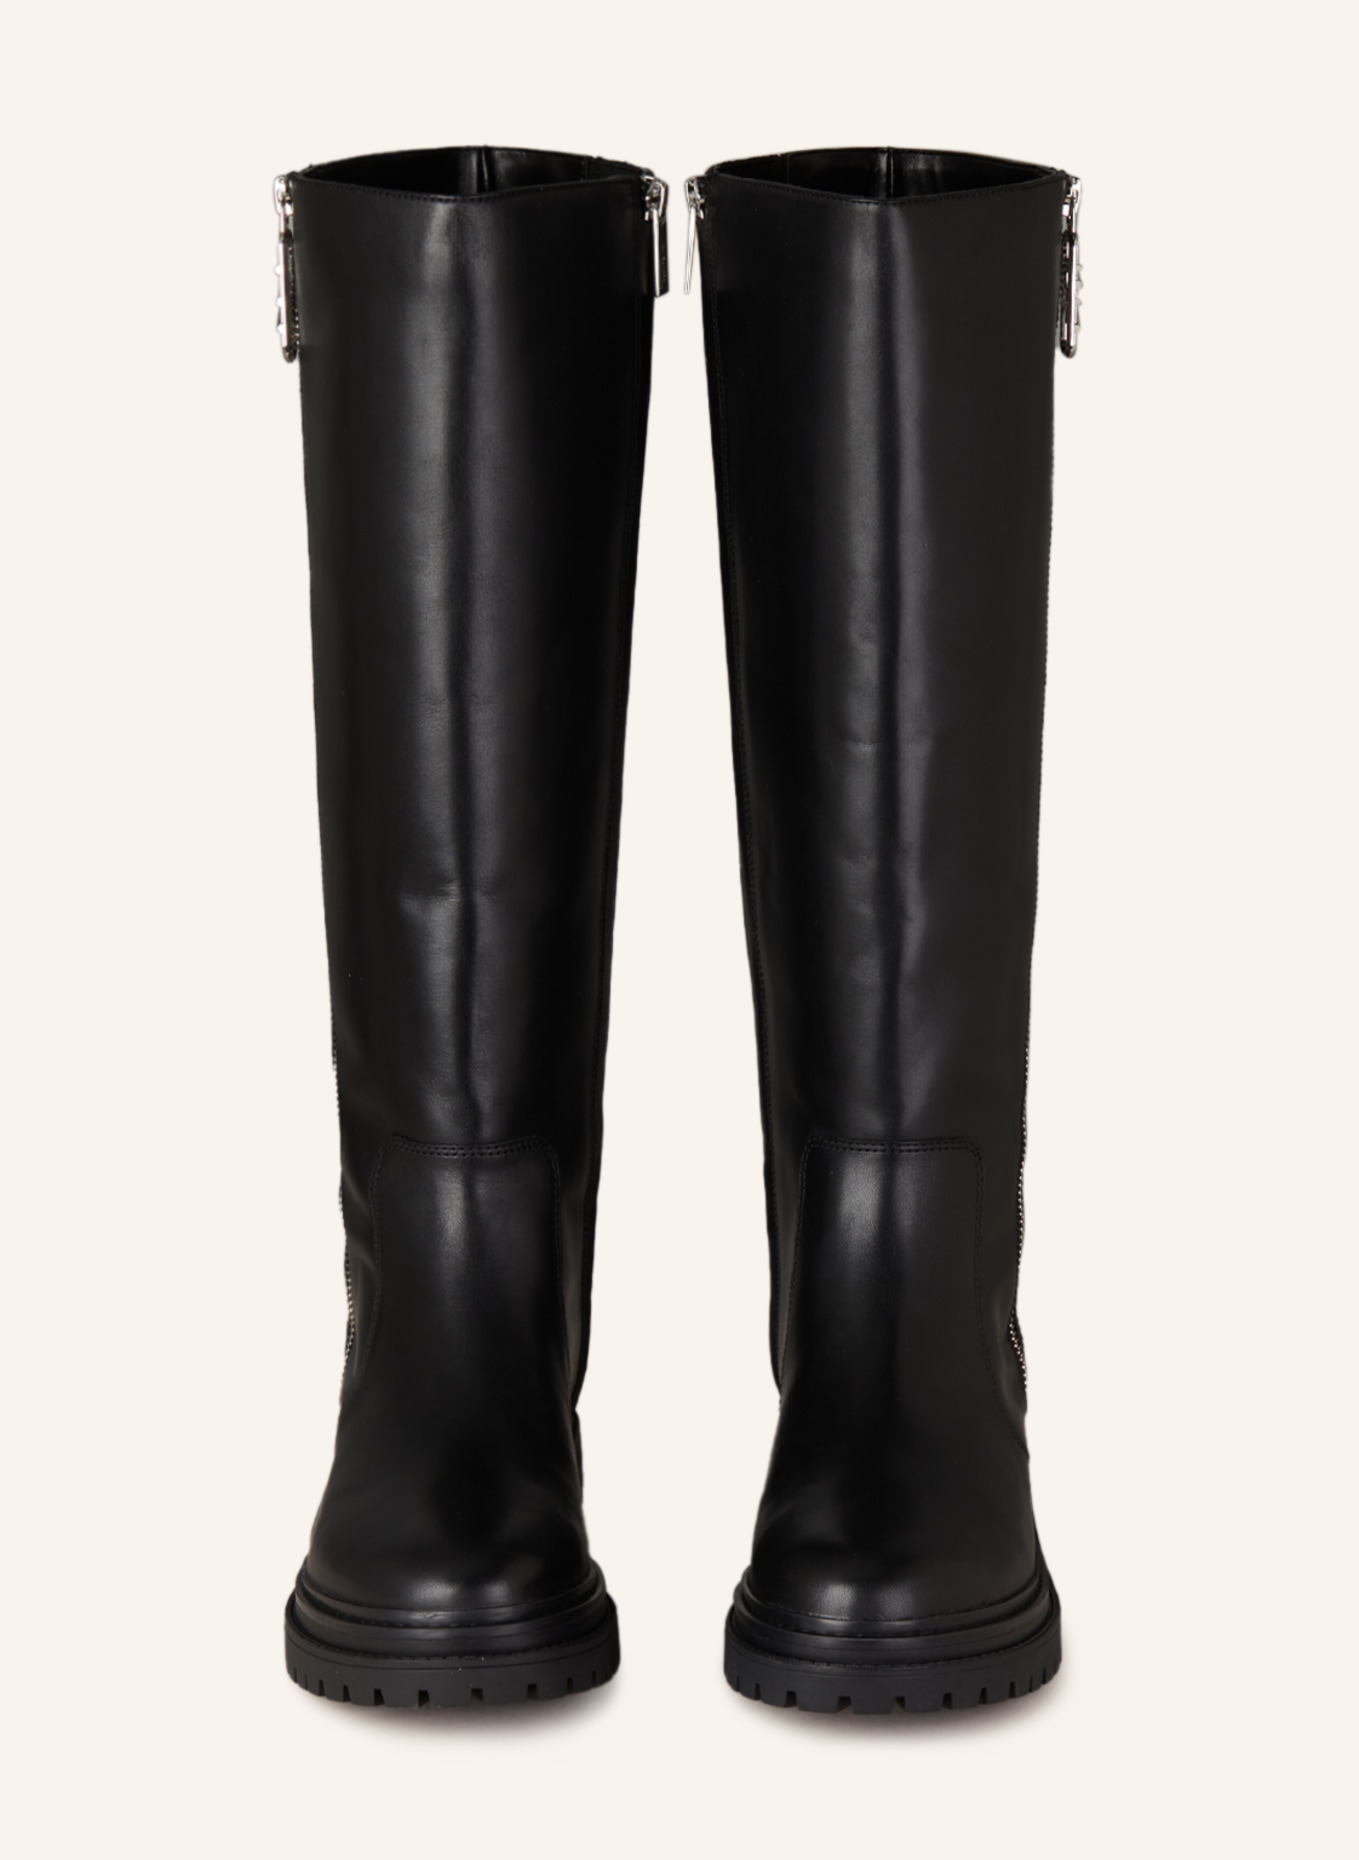 MICHAEL KORS Boots REGAN, Color: 001 BLACK (Image 3)